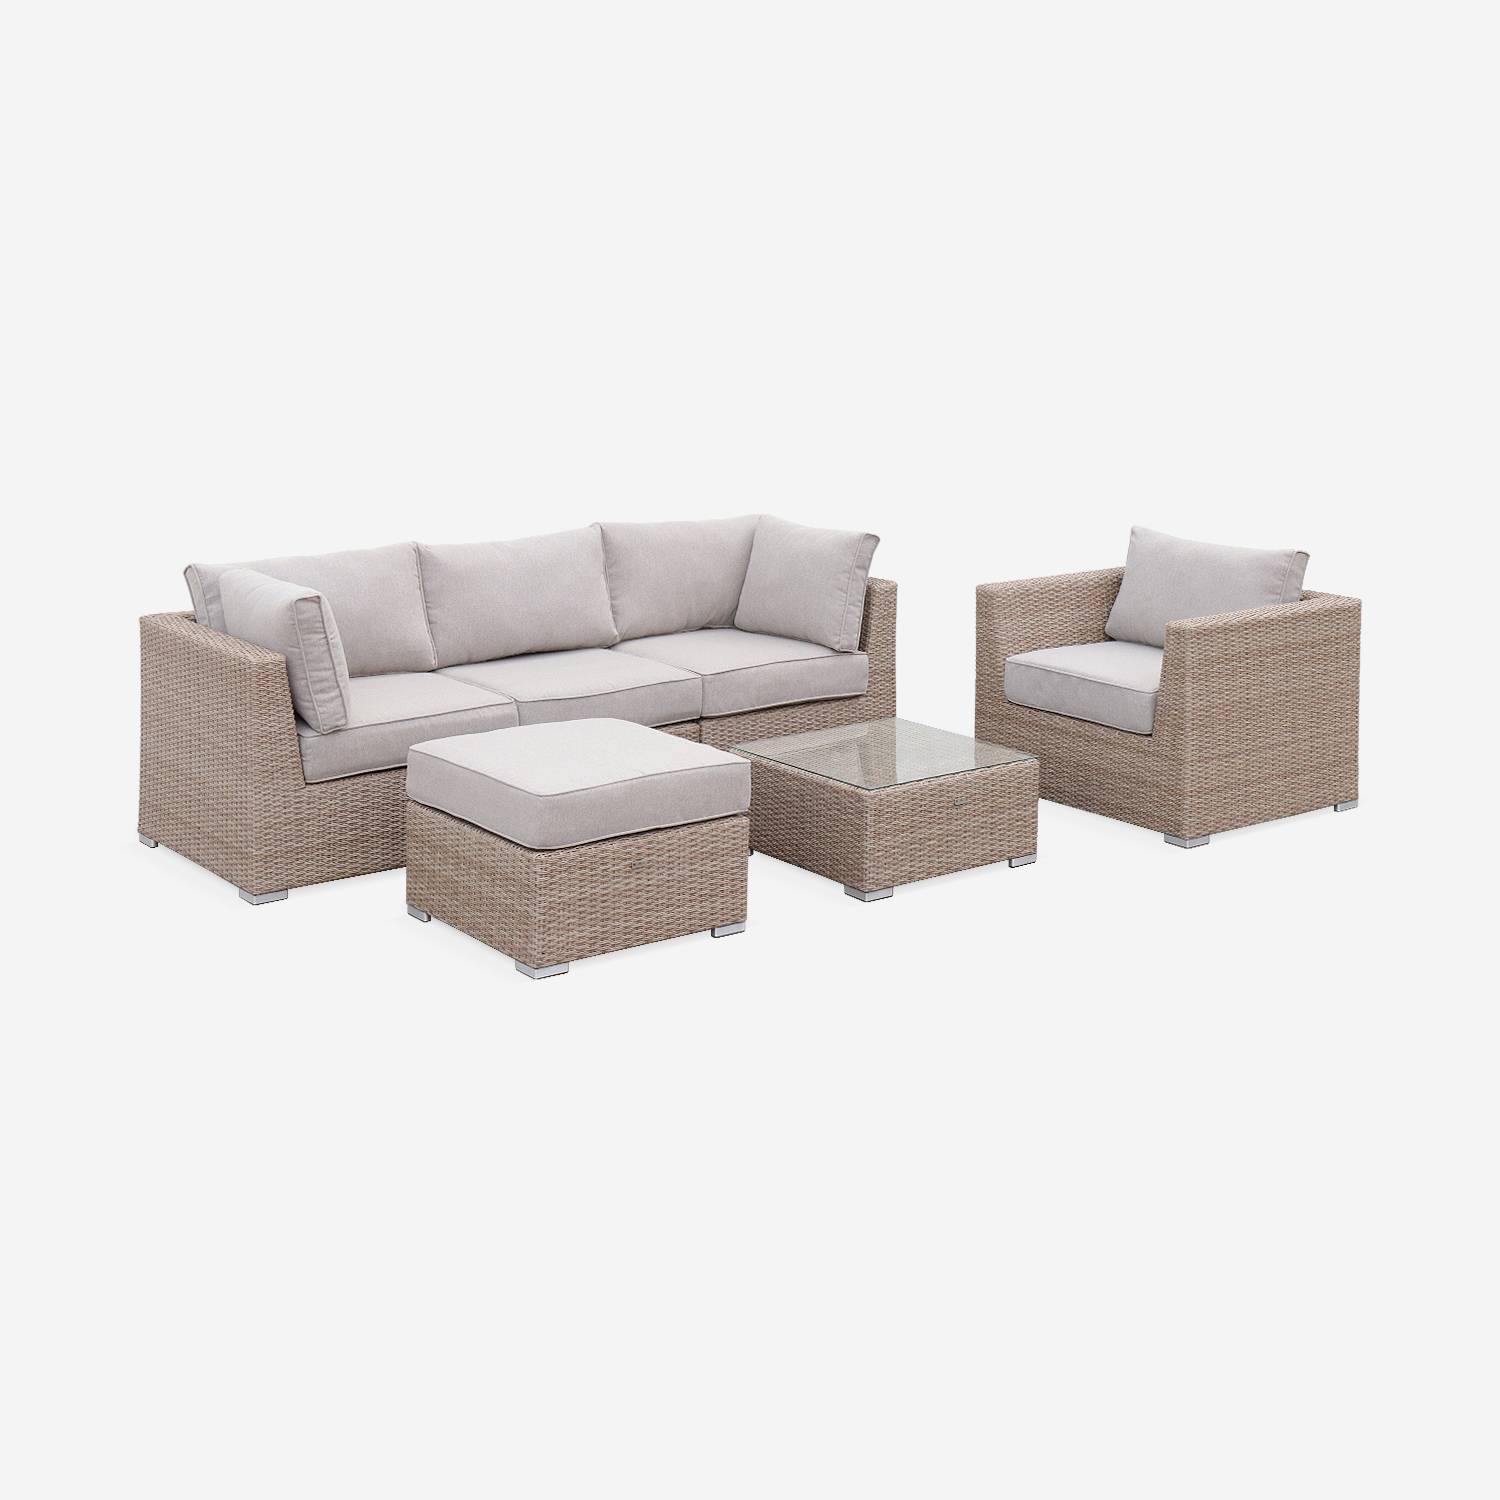 Muebles de jardín de resina trenzada redonda - VINCI - Cojines beige naturales - 5 asientos, ajustable, ultra cómodo, de alta gama,sweeek,Photo3